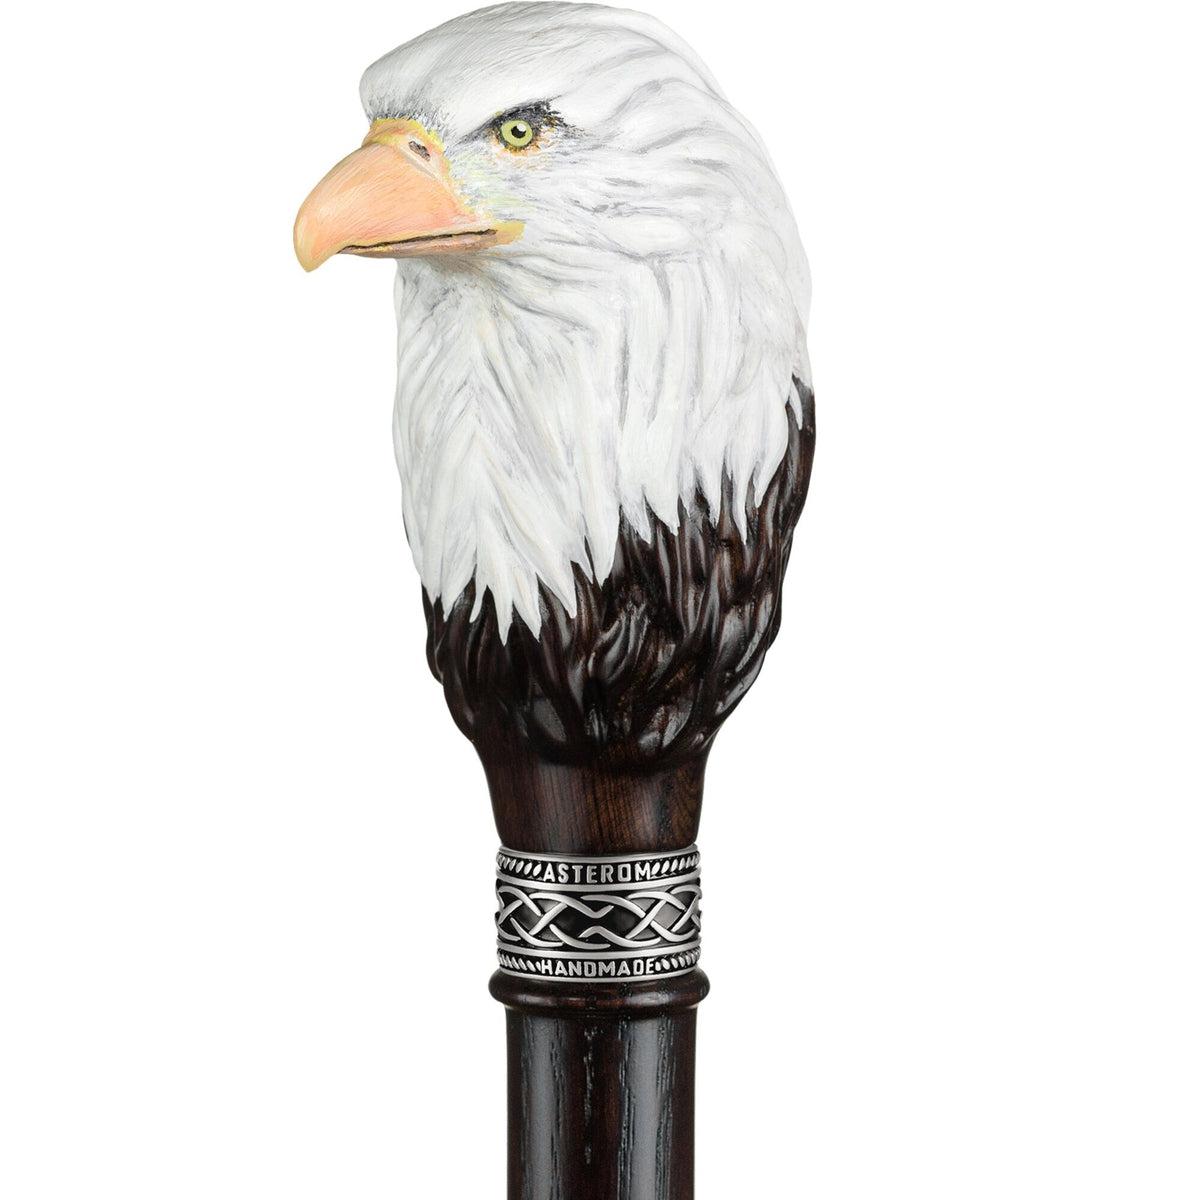 Custom Carved Wooden Eagle Knob Cane or Walking stick